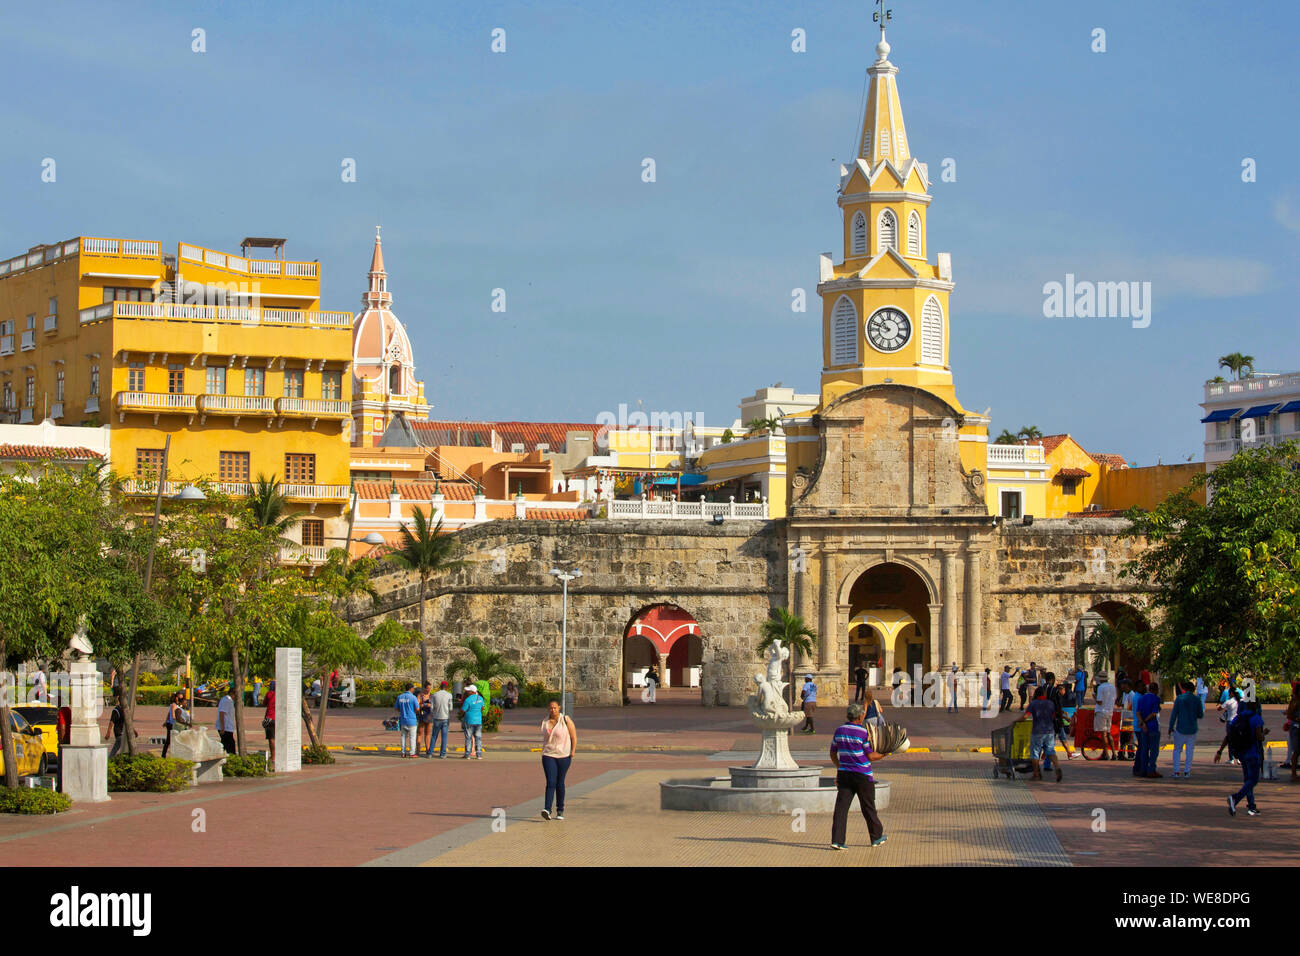 La Colombie, Département de Bolivar, Carthagène, inscrite au patrimoine mondial de l'UNESCO, Puerta del Reloj et sa tour de l'horloge, porte d'entrée de la vieille ville coloniale Banque D'Images